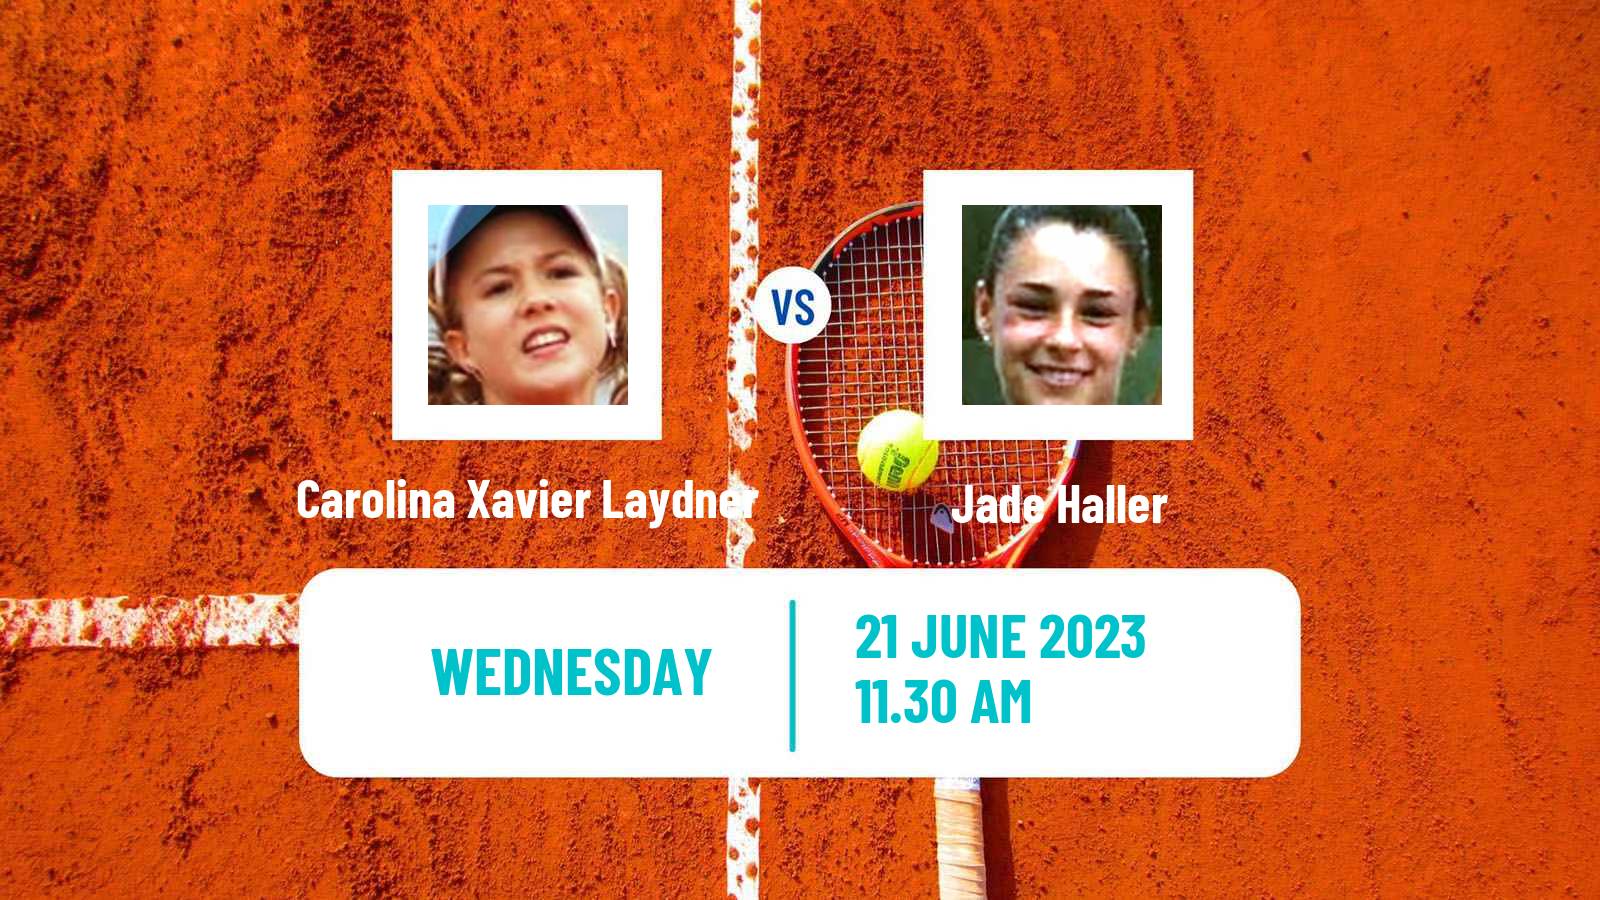 Tennis ITF W15 Buenos Aires Women Carolina Xavier Laydner - Jade Haller